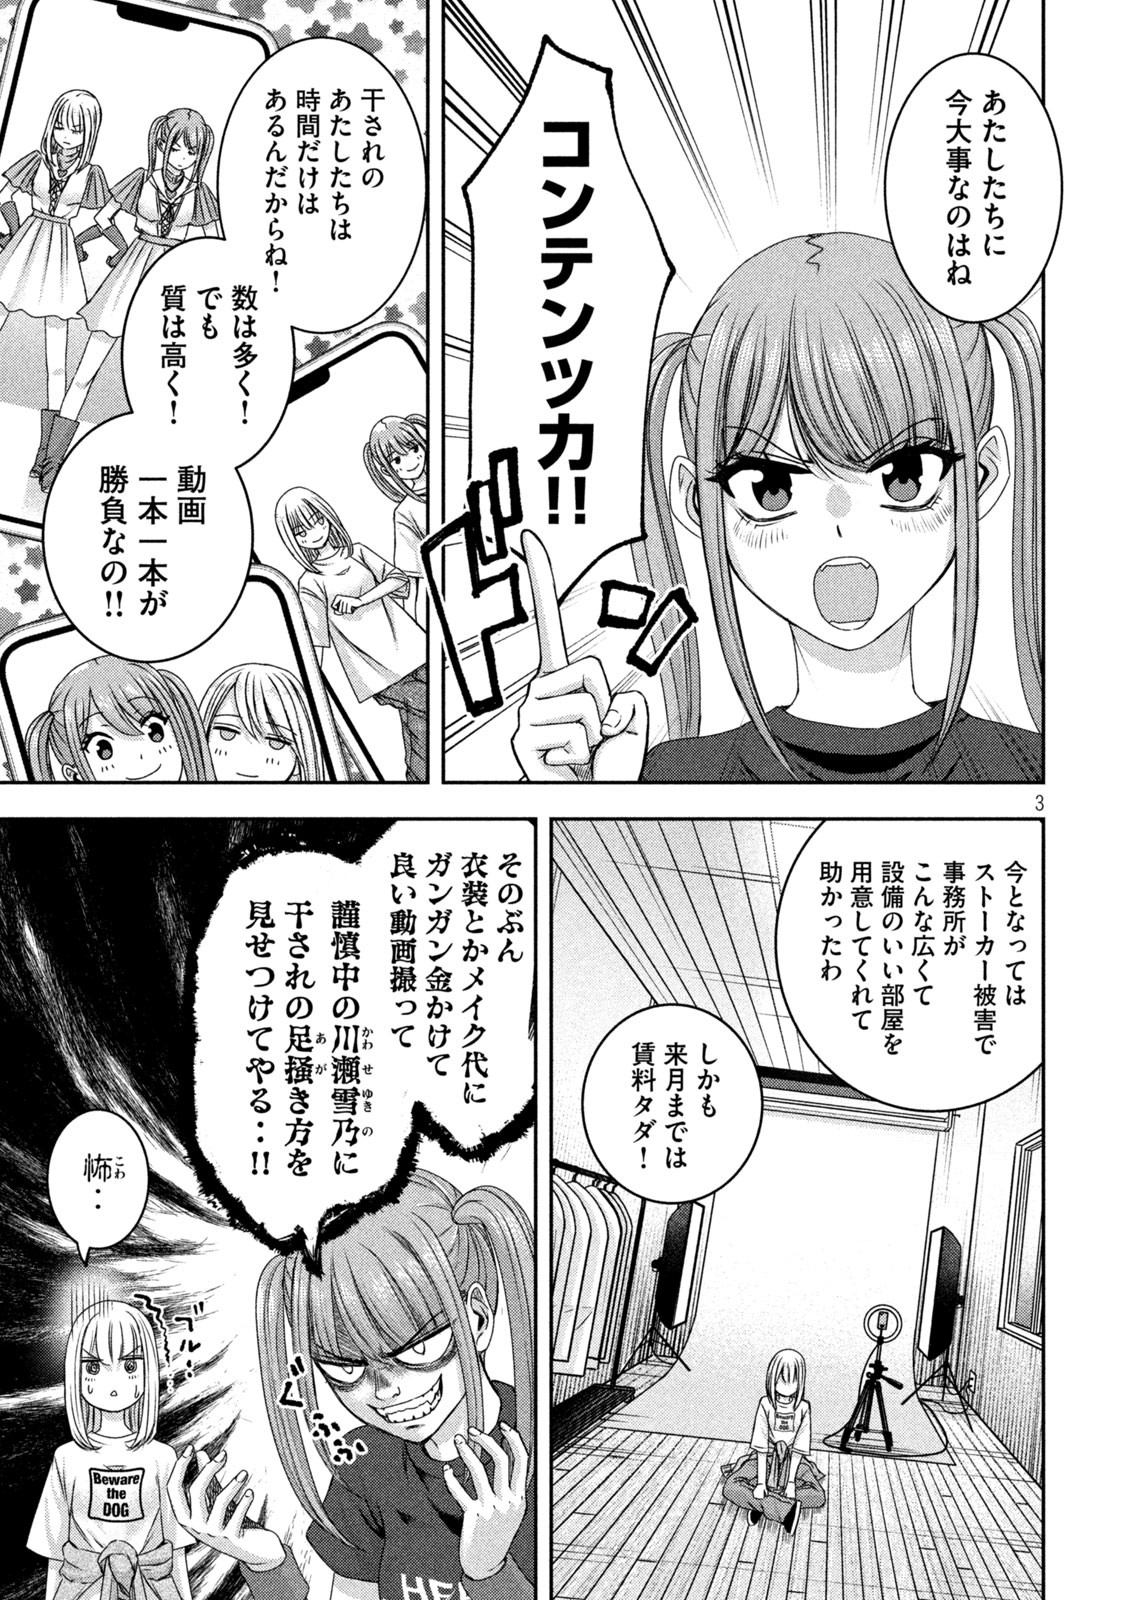 Watashi no Arika - Chapter 37 - Page 3